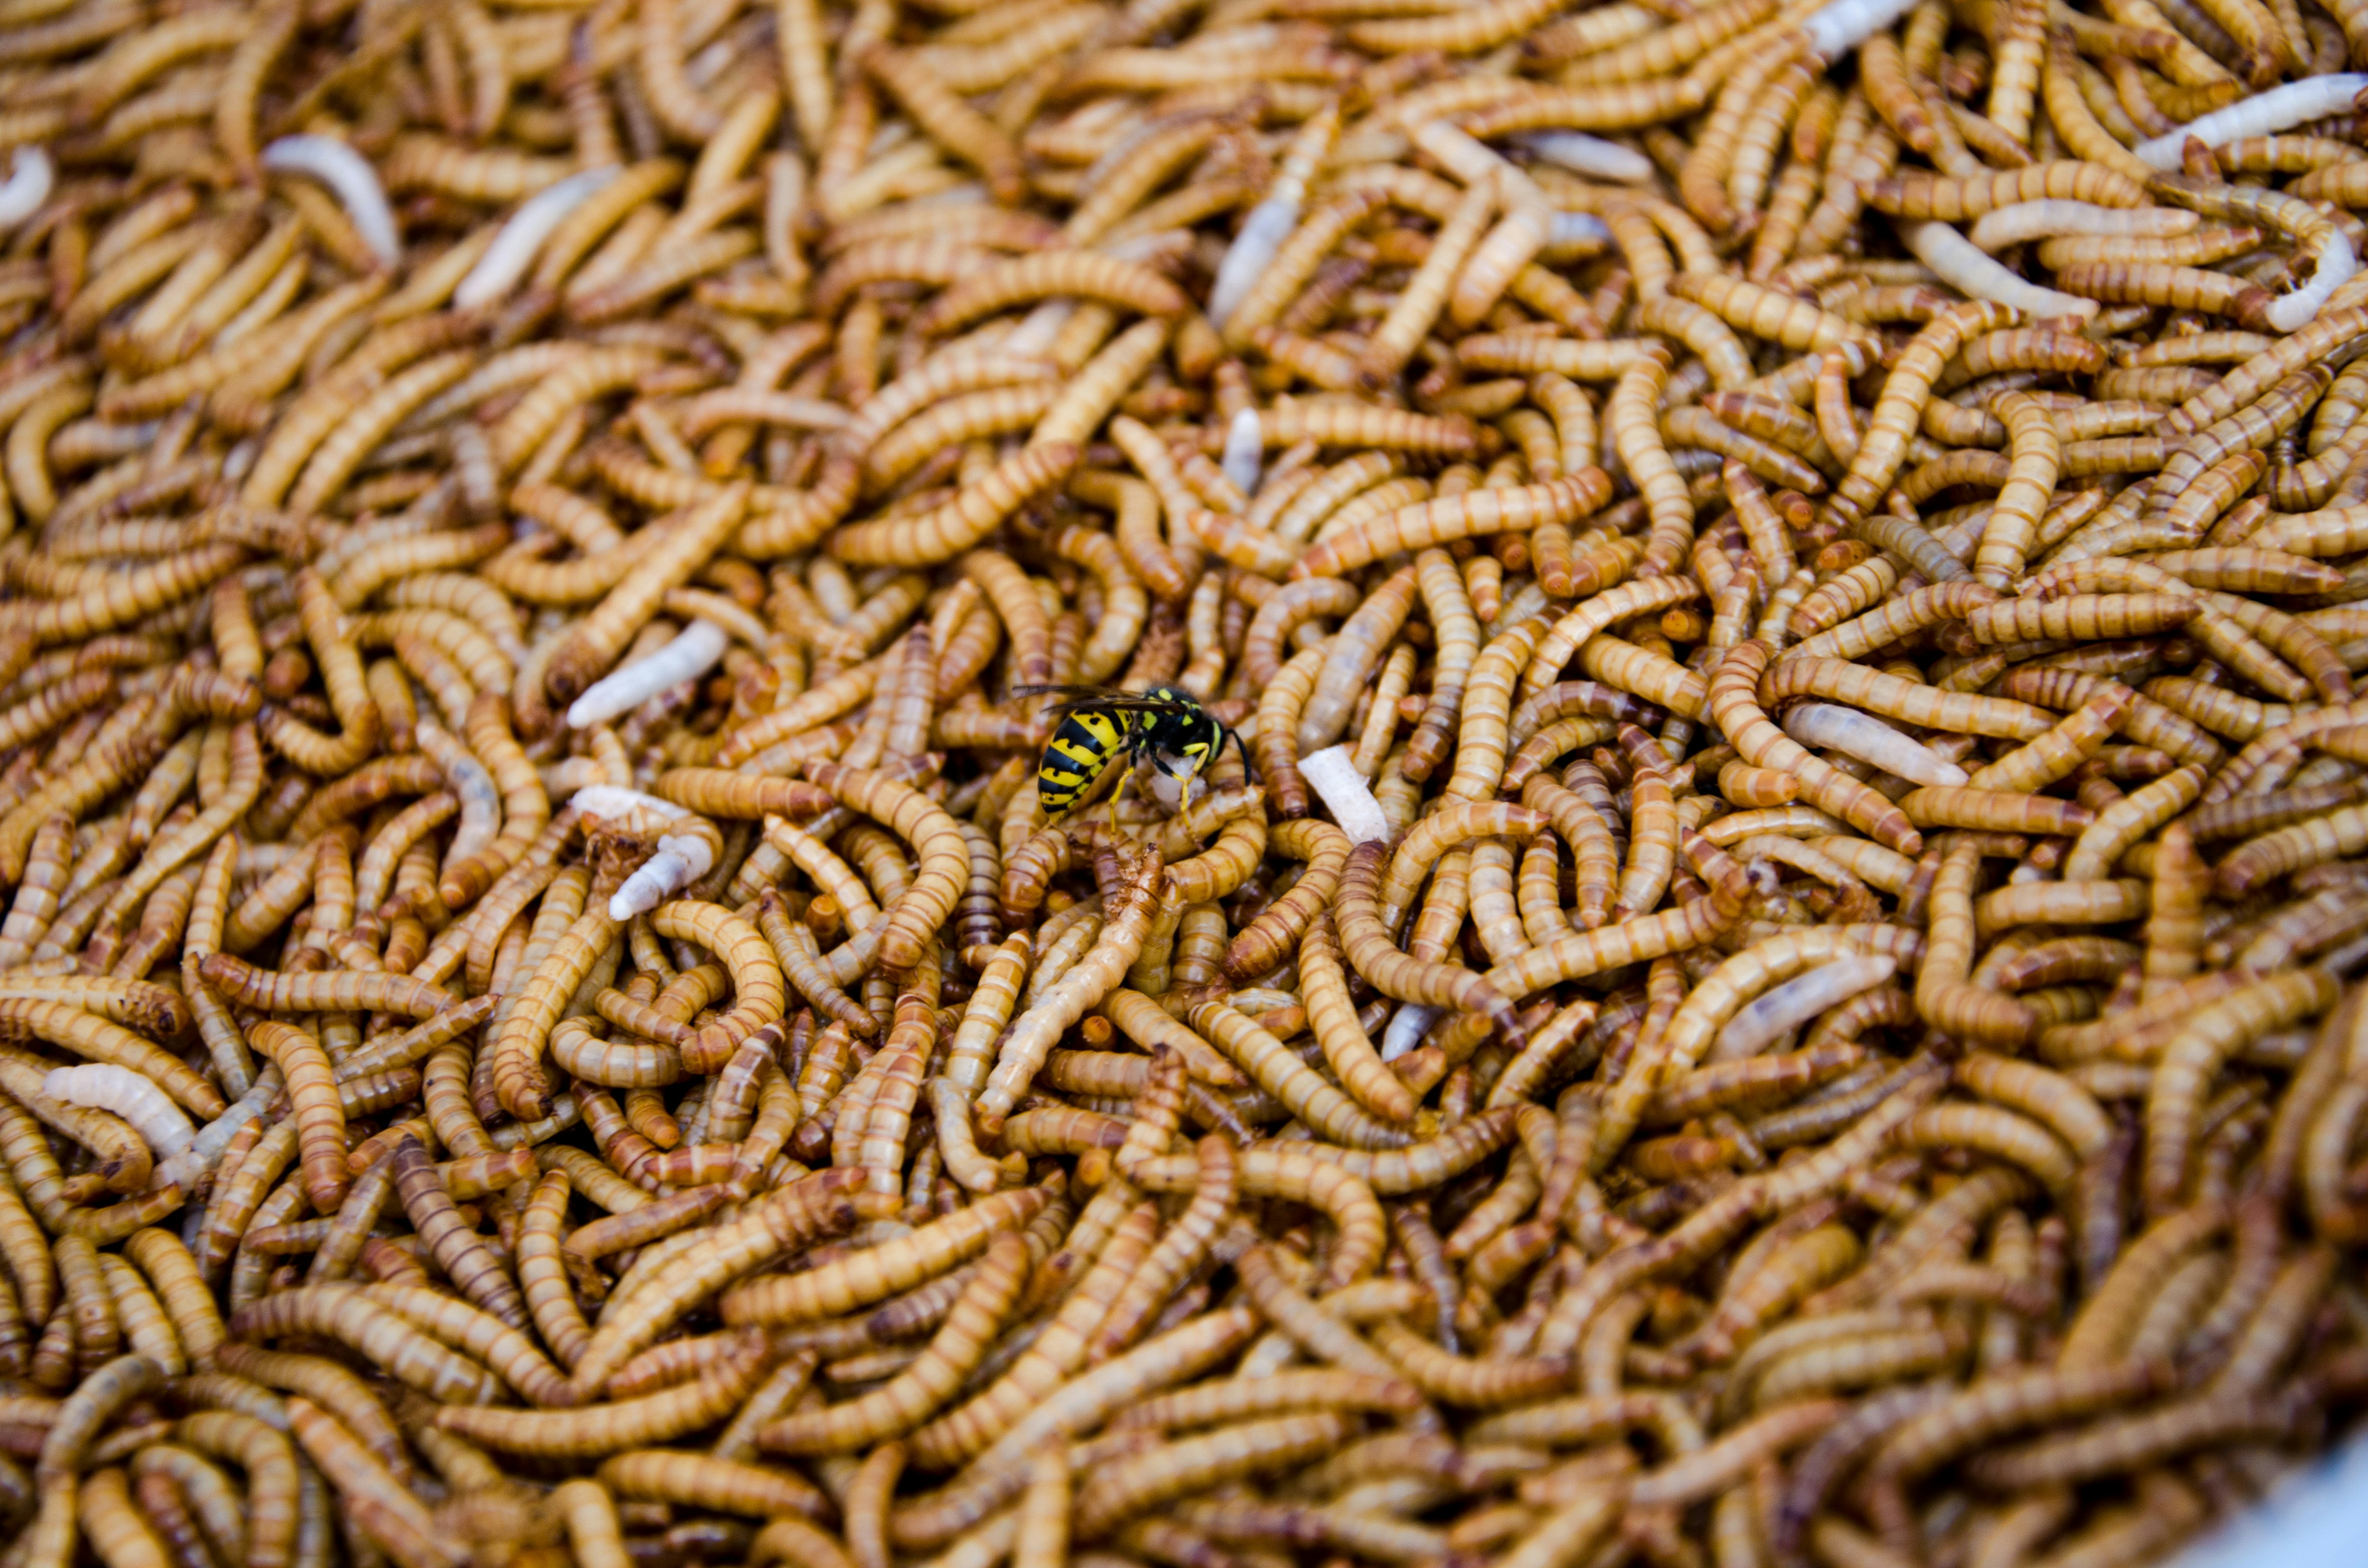 Wasp eating maggots